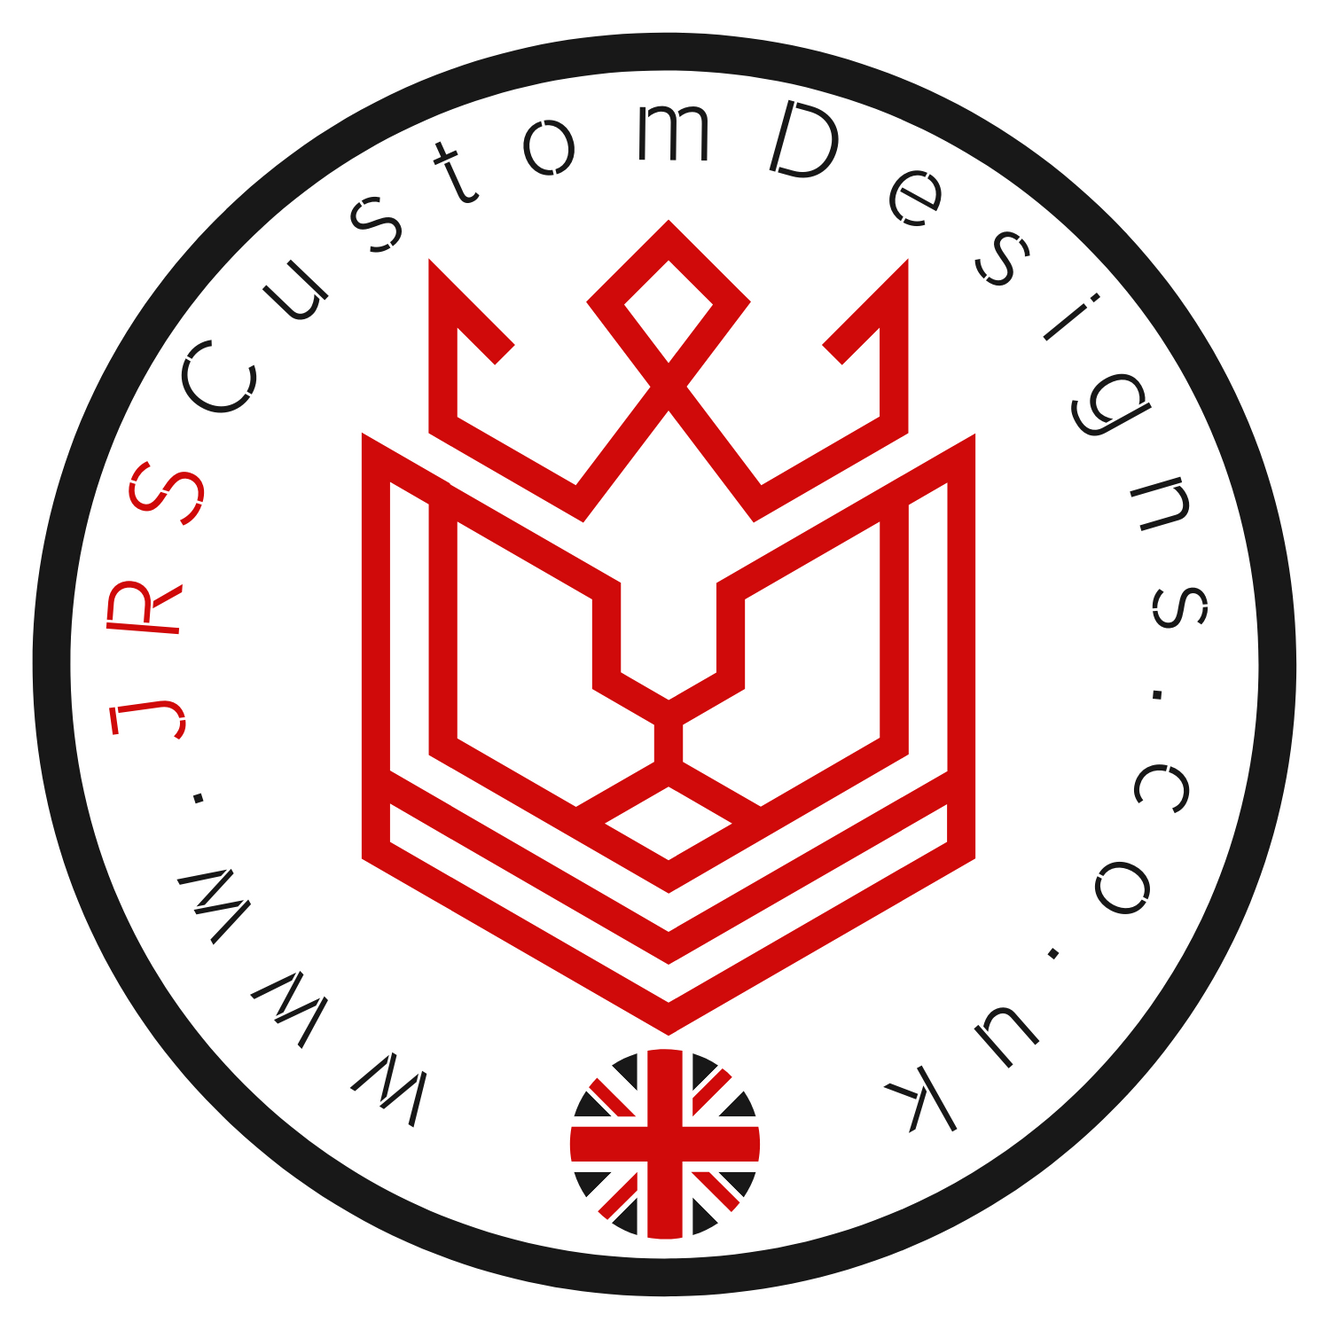 www.jrscustomdesigns.co.uk